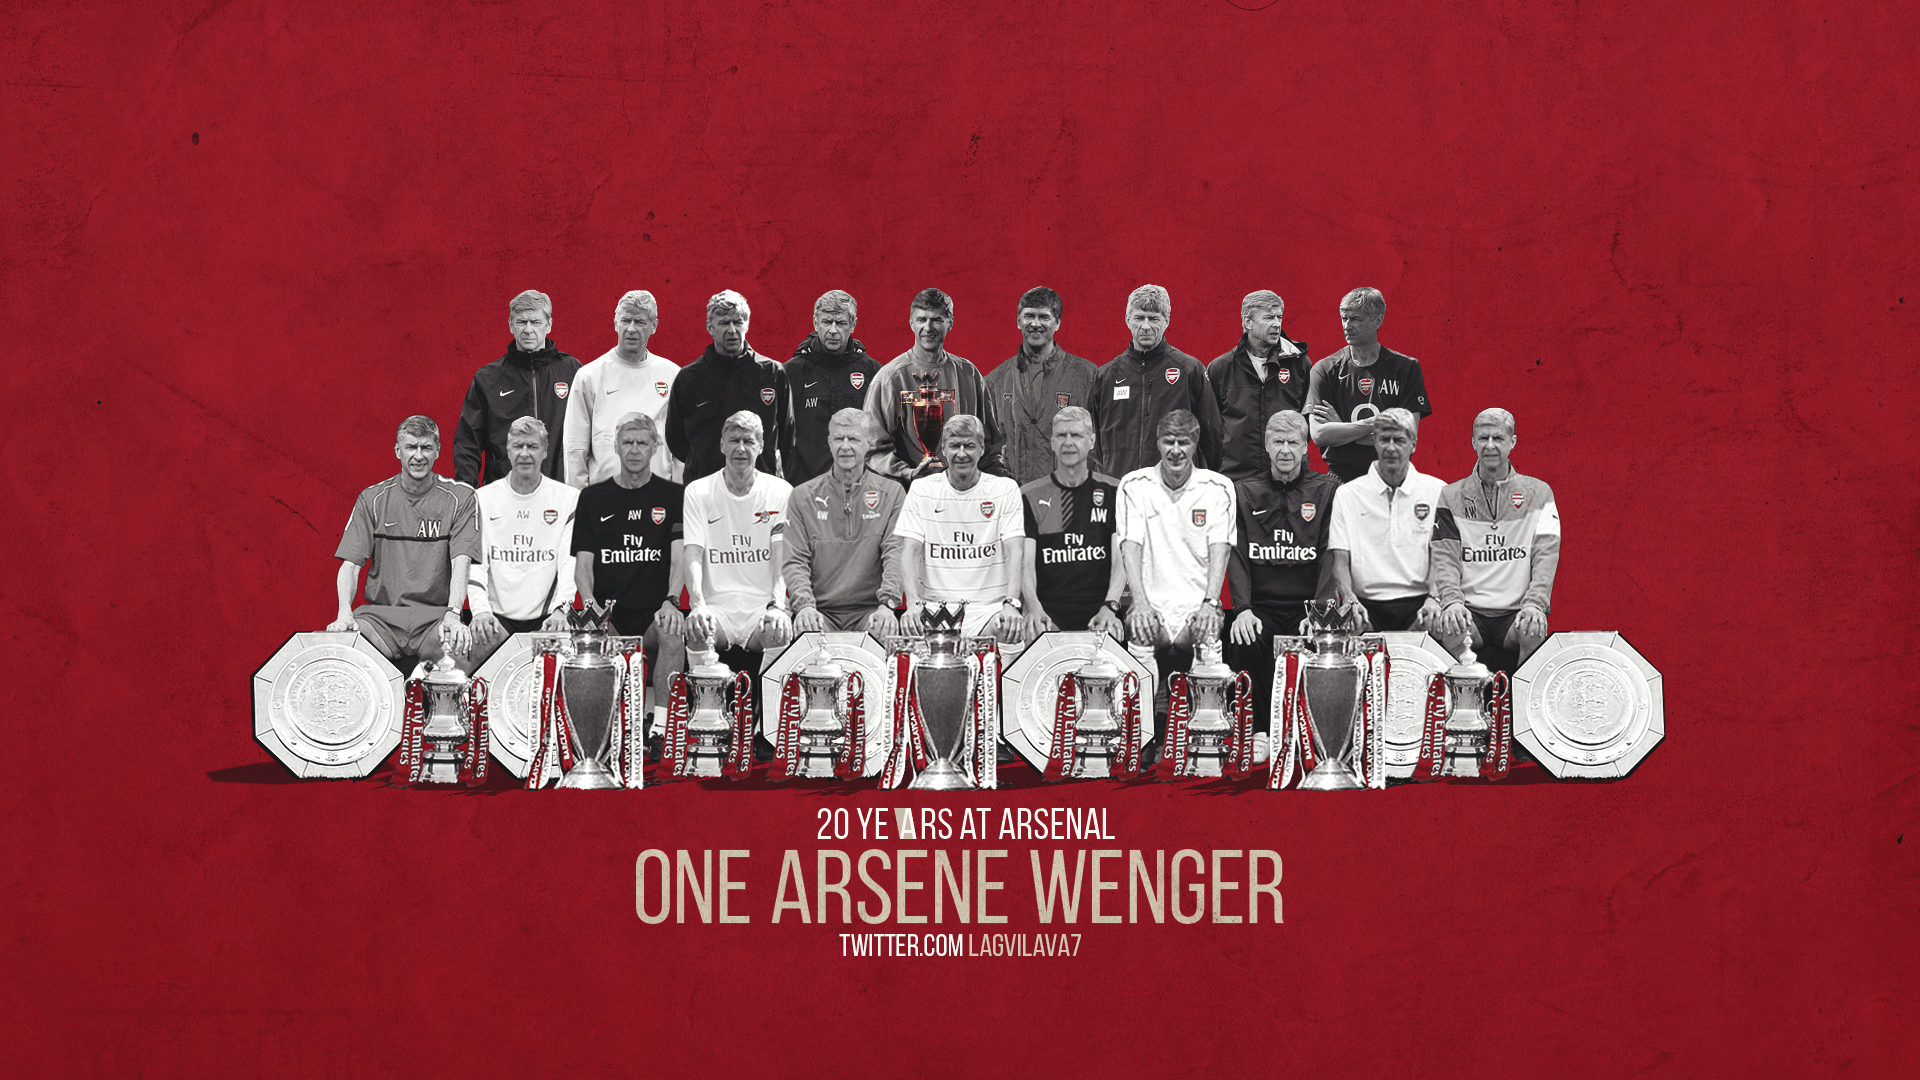 Years: Arsene Wenger